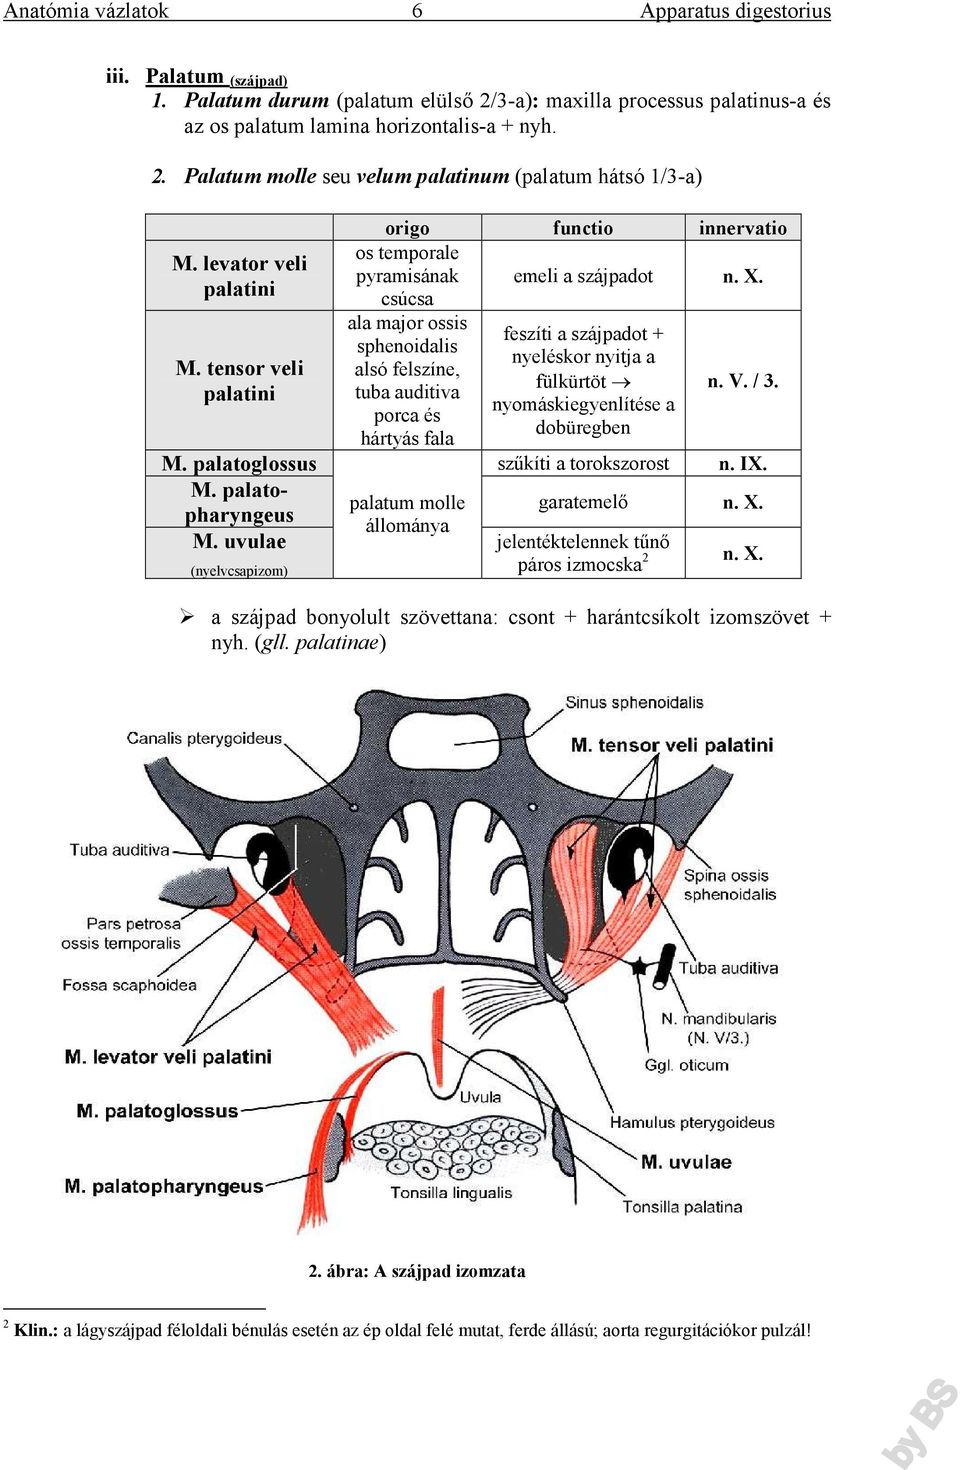 csúcsa ala major ossis feszíti a szájpadot + sphenoidalis nyeléskor nyitja a alsó felszíne, fülkürtöt tuba auditiva nyomáskiegyenlítése a porca és dobüregben hártyás fala n. V. / 3. M.